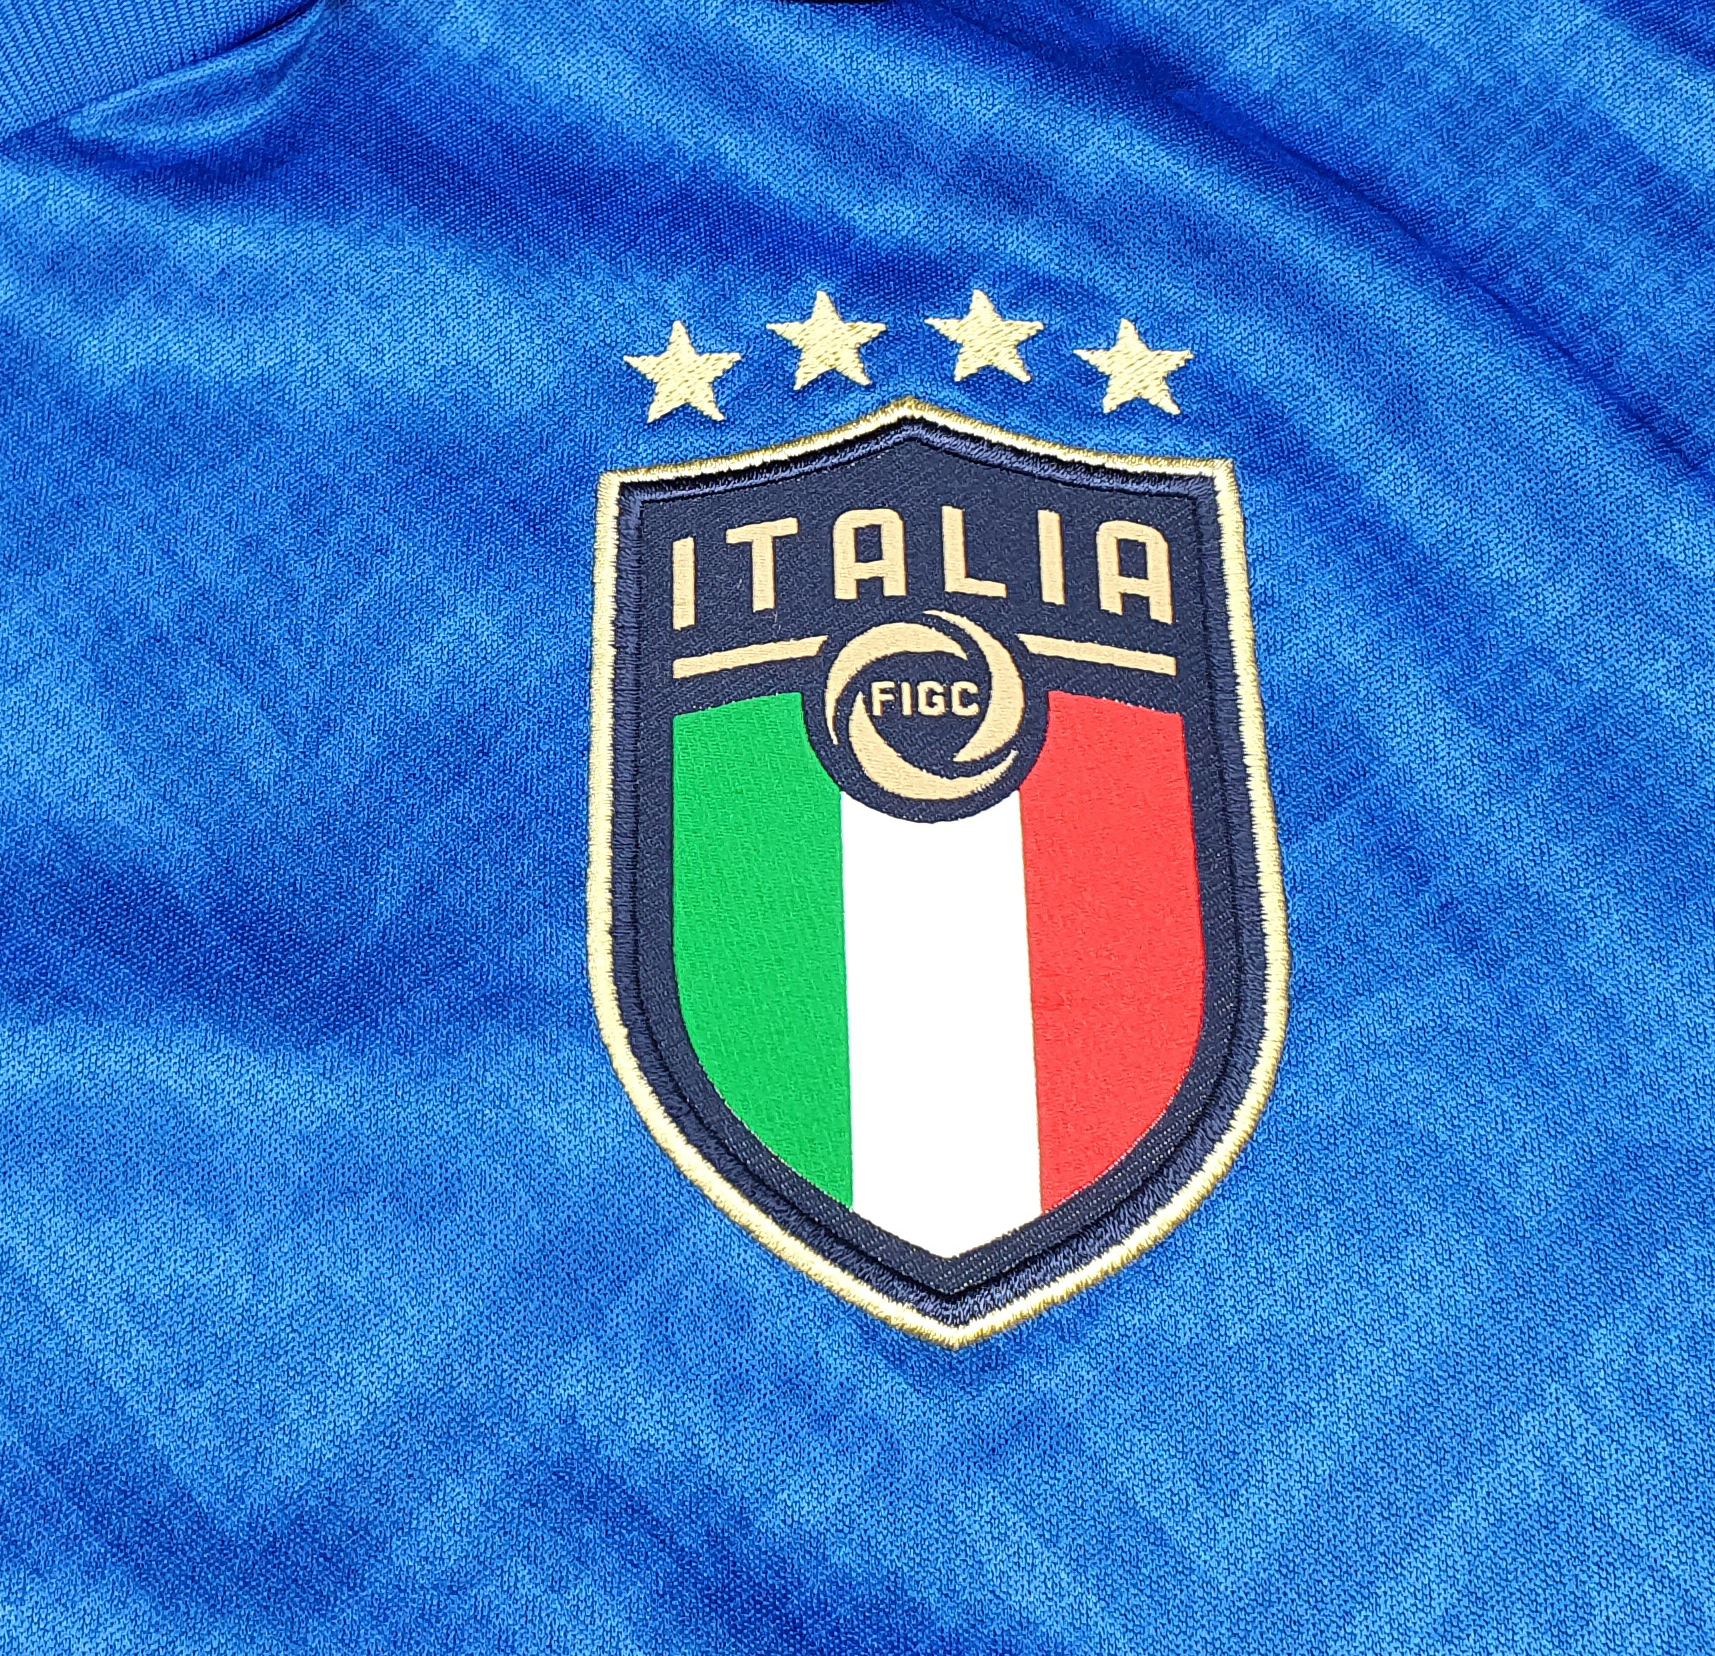 Maglia Match Worn Gara Verratti PUMA Italia-Inghilterra, 44% OFF